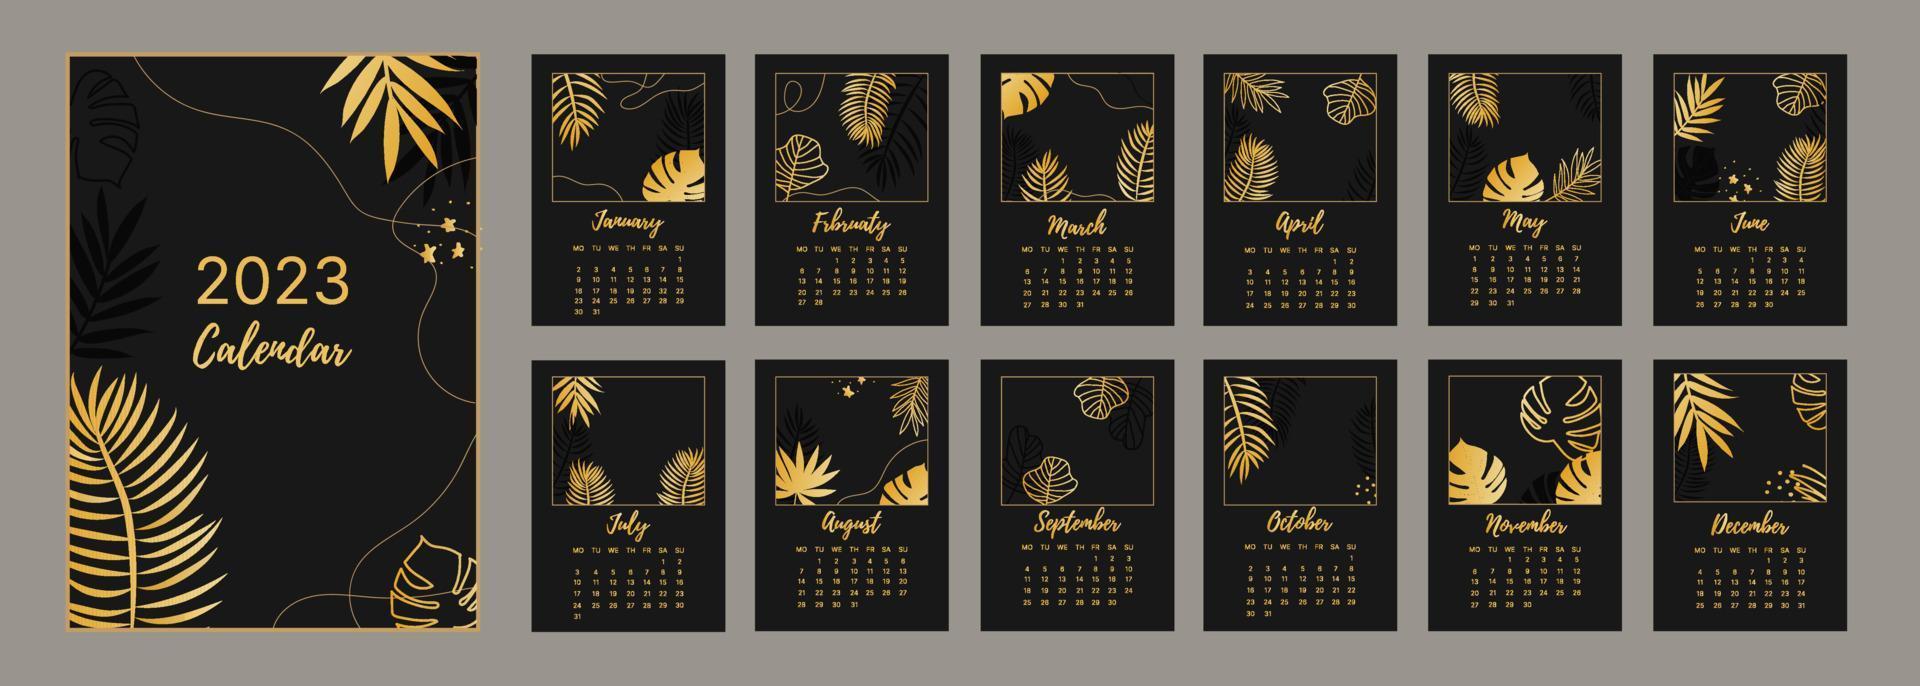 klassisk månadskalender för 2023. kalender med palm- och monsterblad, svart och guldfärg. vektor